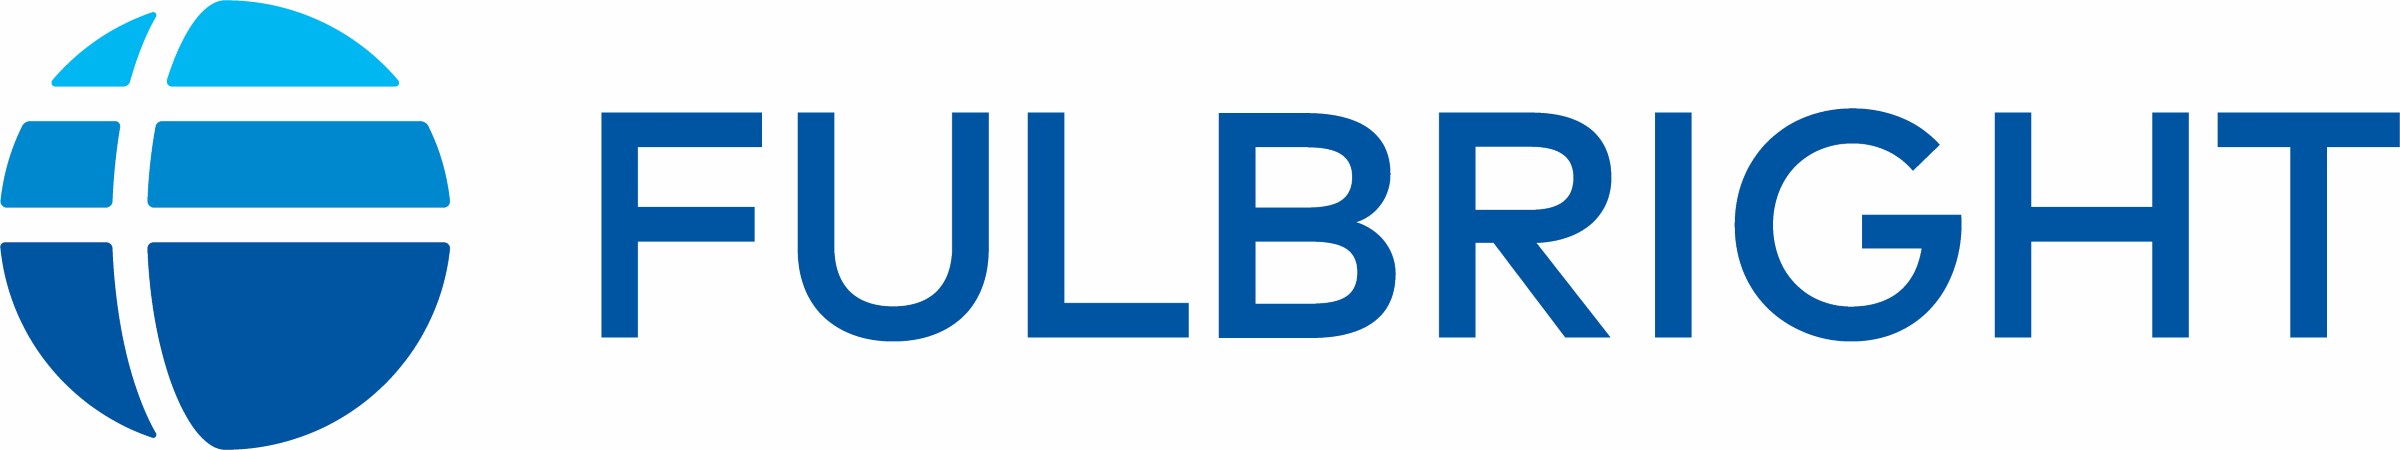 Fulbright Scholar Program Logo